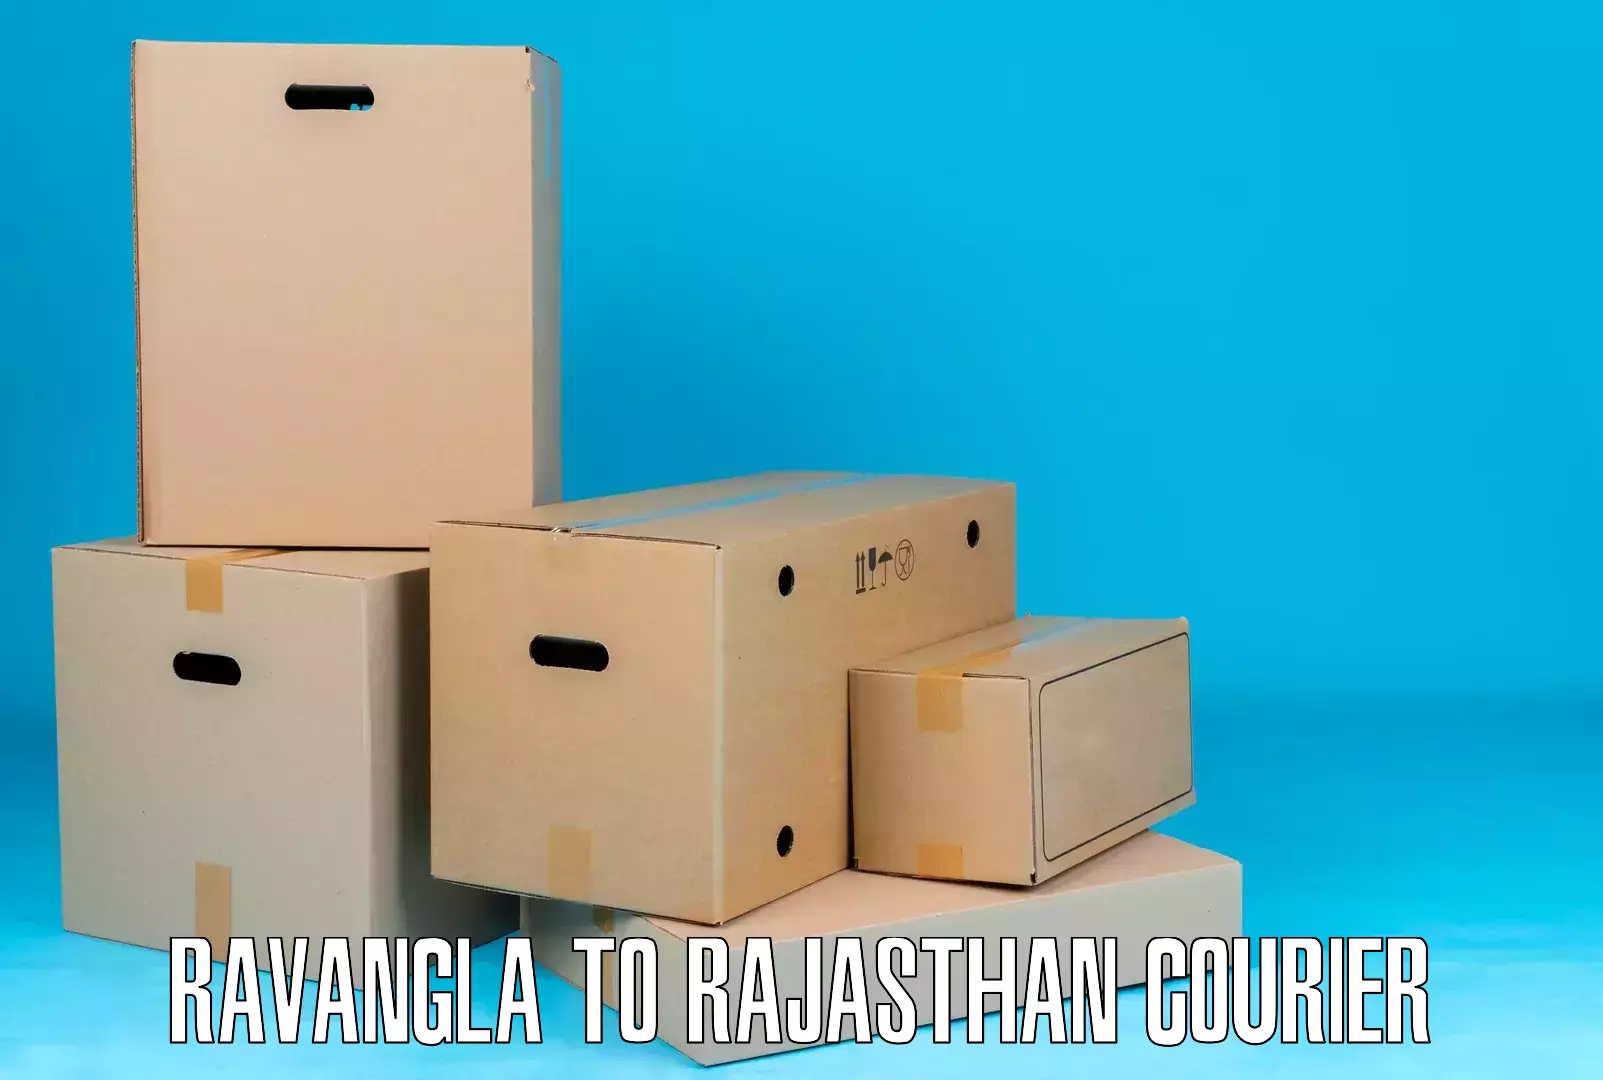 End-to-end delivery Ravangla to Mandphiya